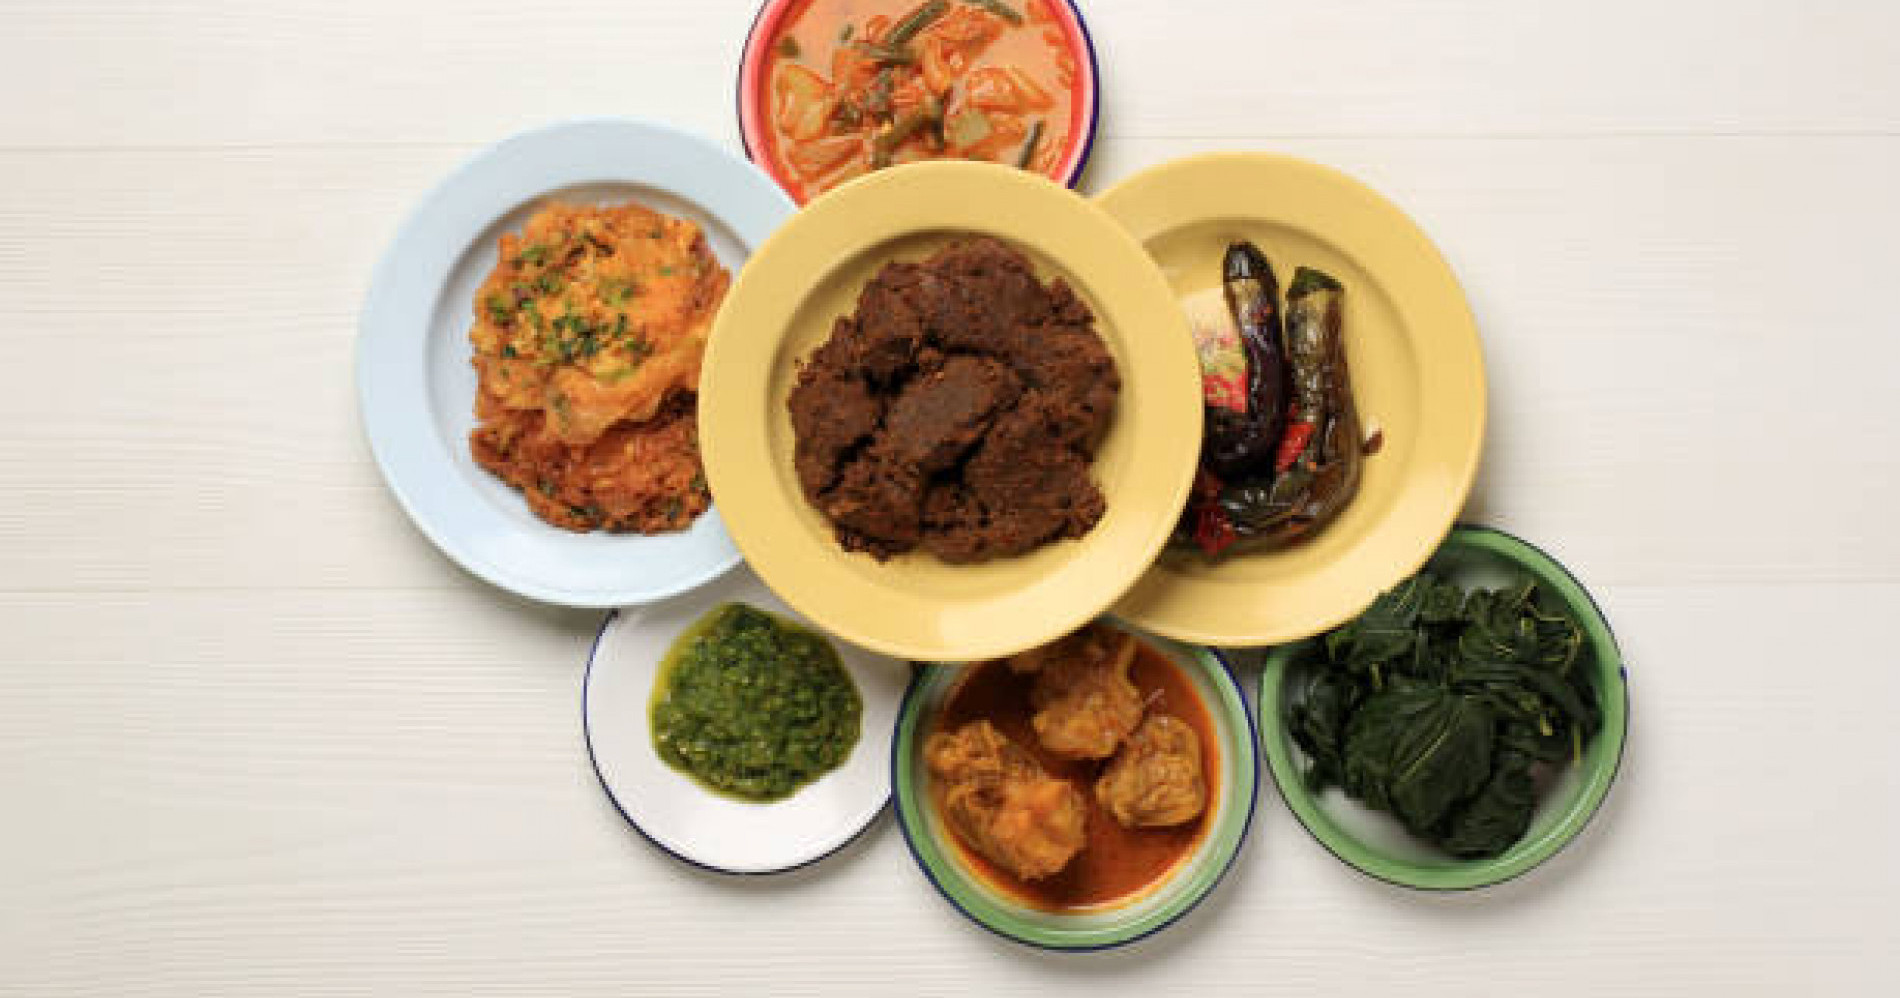 Resep makanan padang adalah kuliner tradisional legendaris untuk Indonesia. Yuk, simak menu terbaik dari masakan padang yang legendaris.